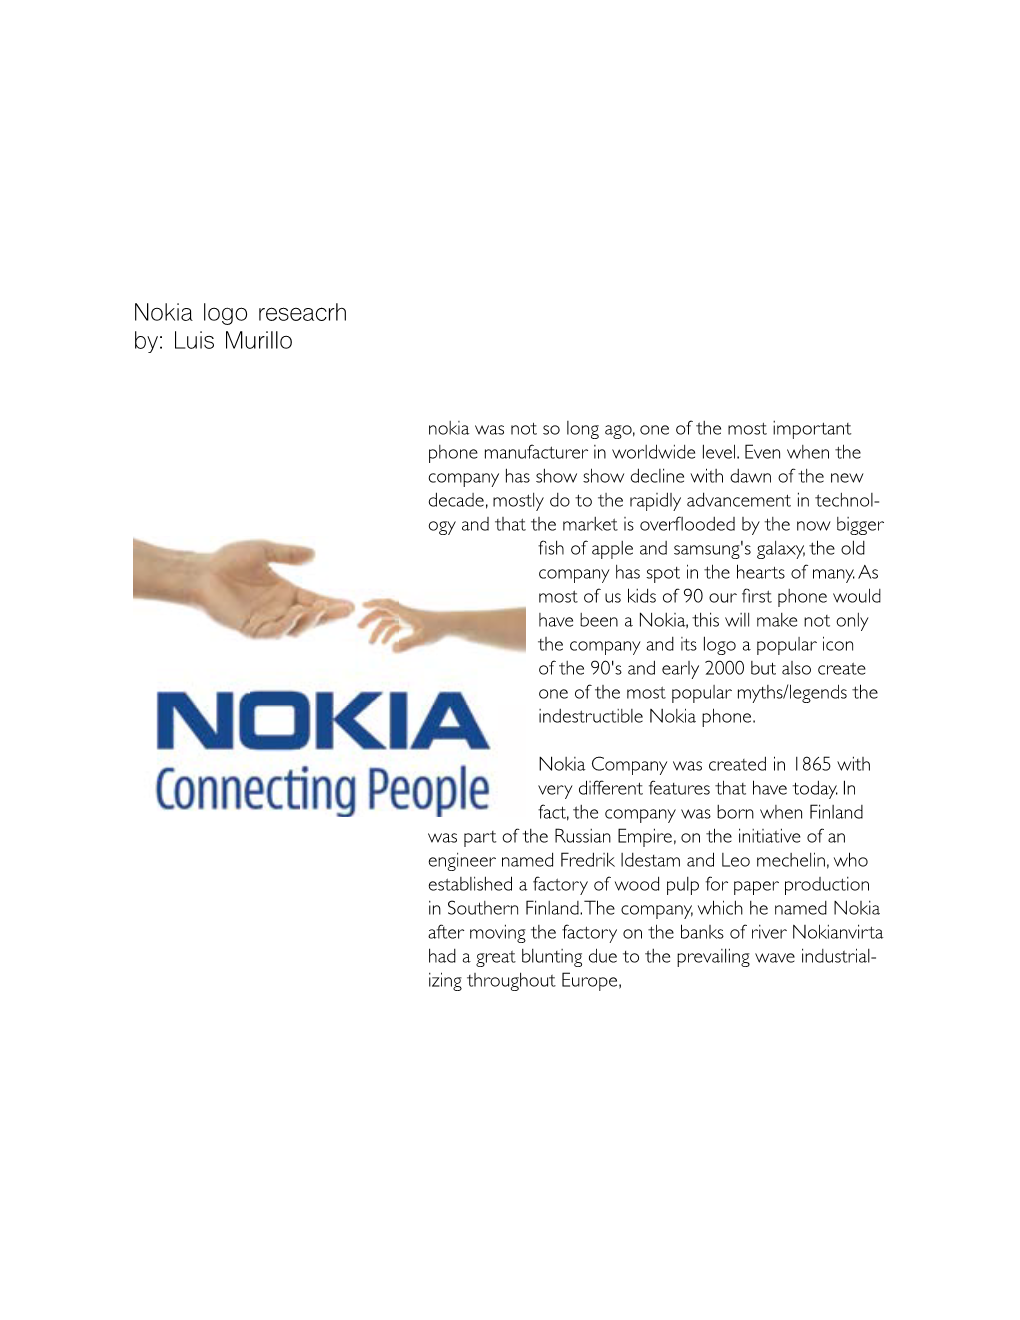 Nokia Logo Reseacrh By: Luis Murillo